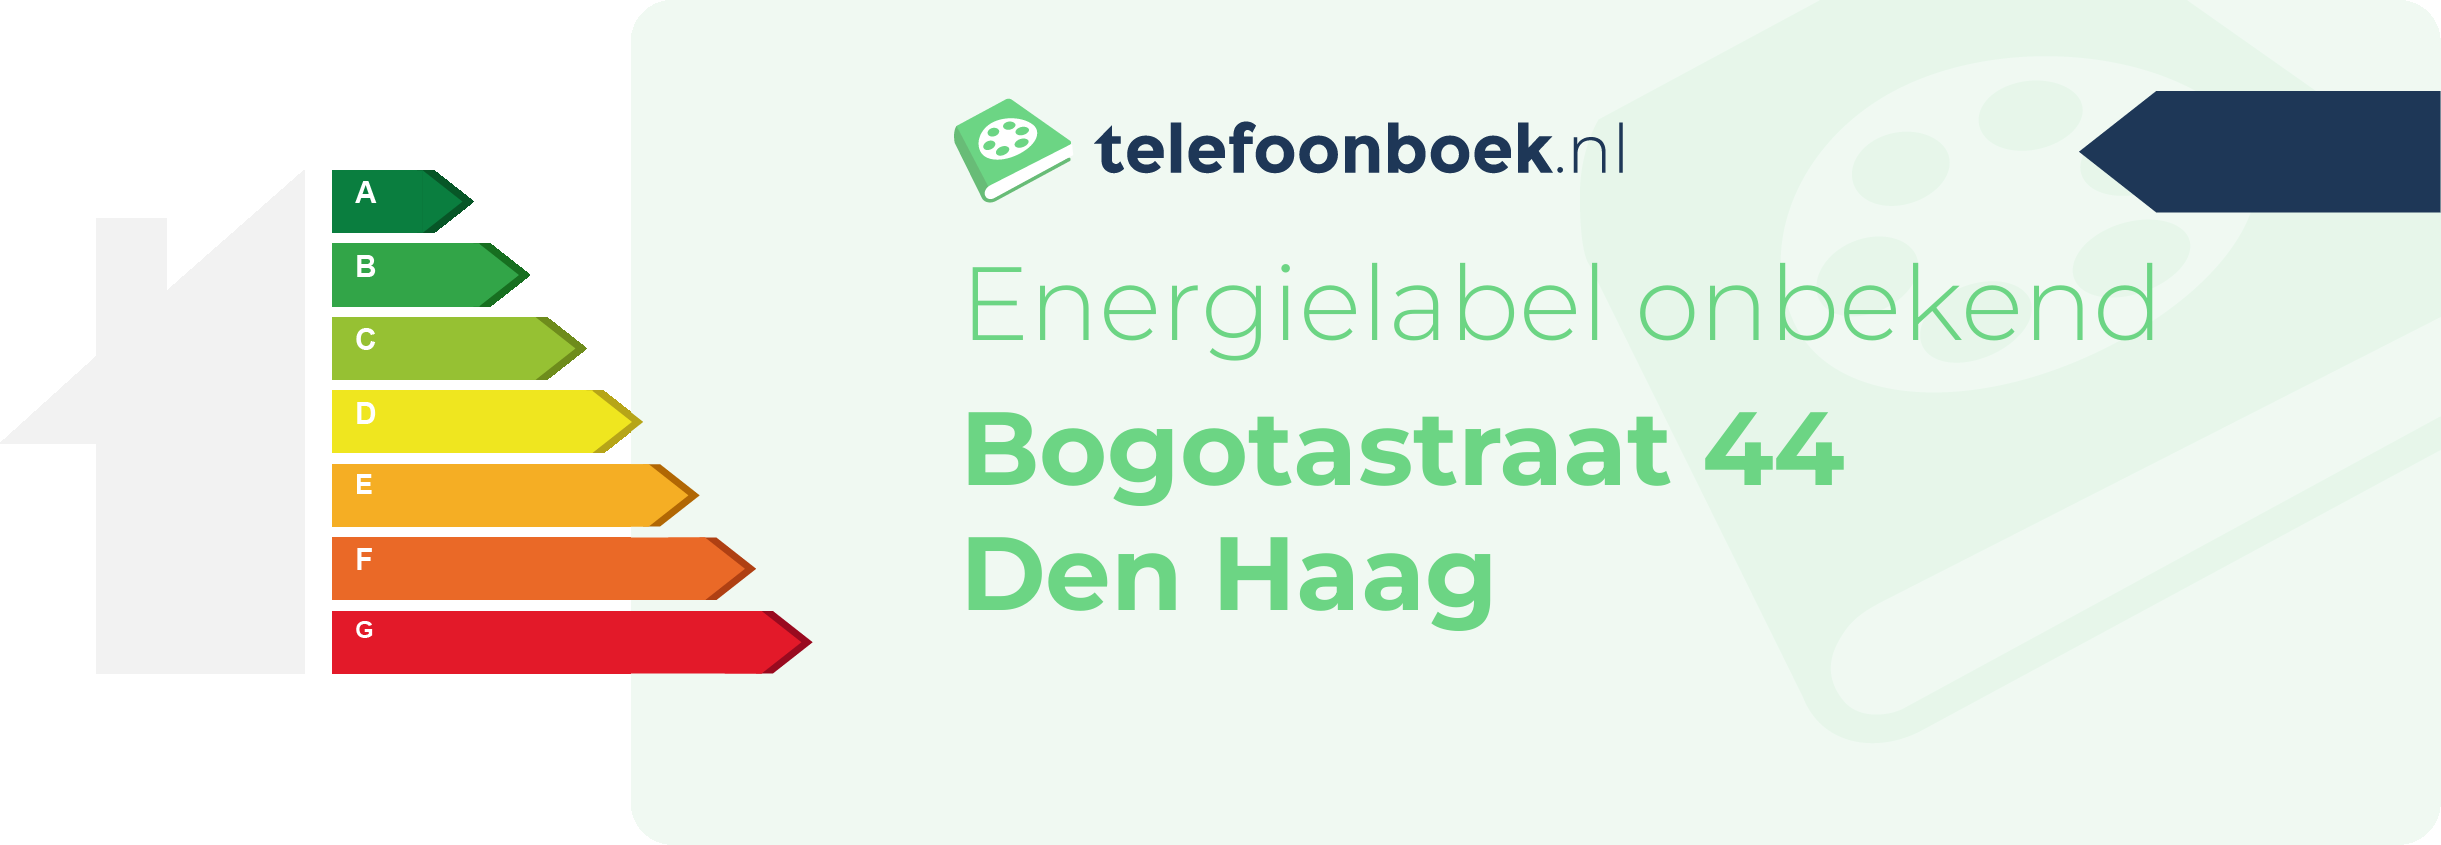 Energielabel Bogotastraat 44 Den Haag